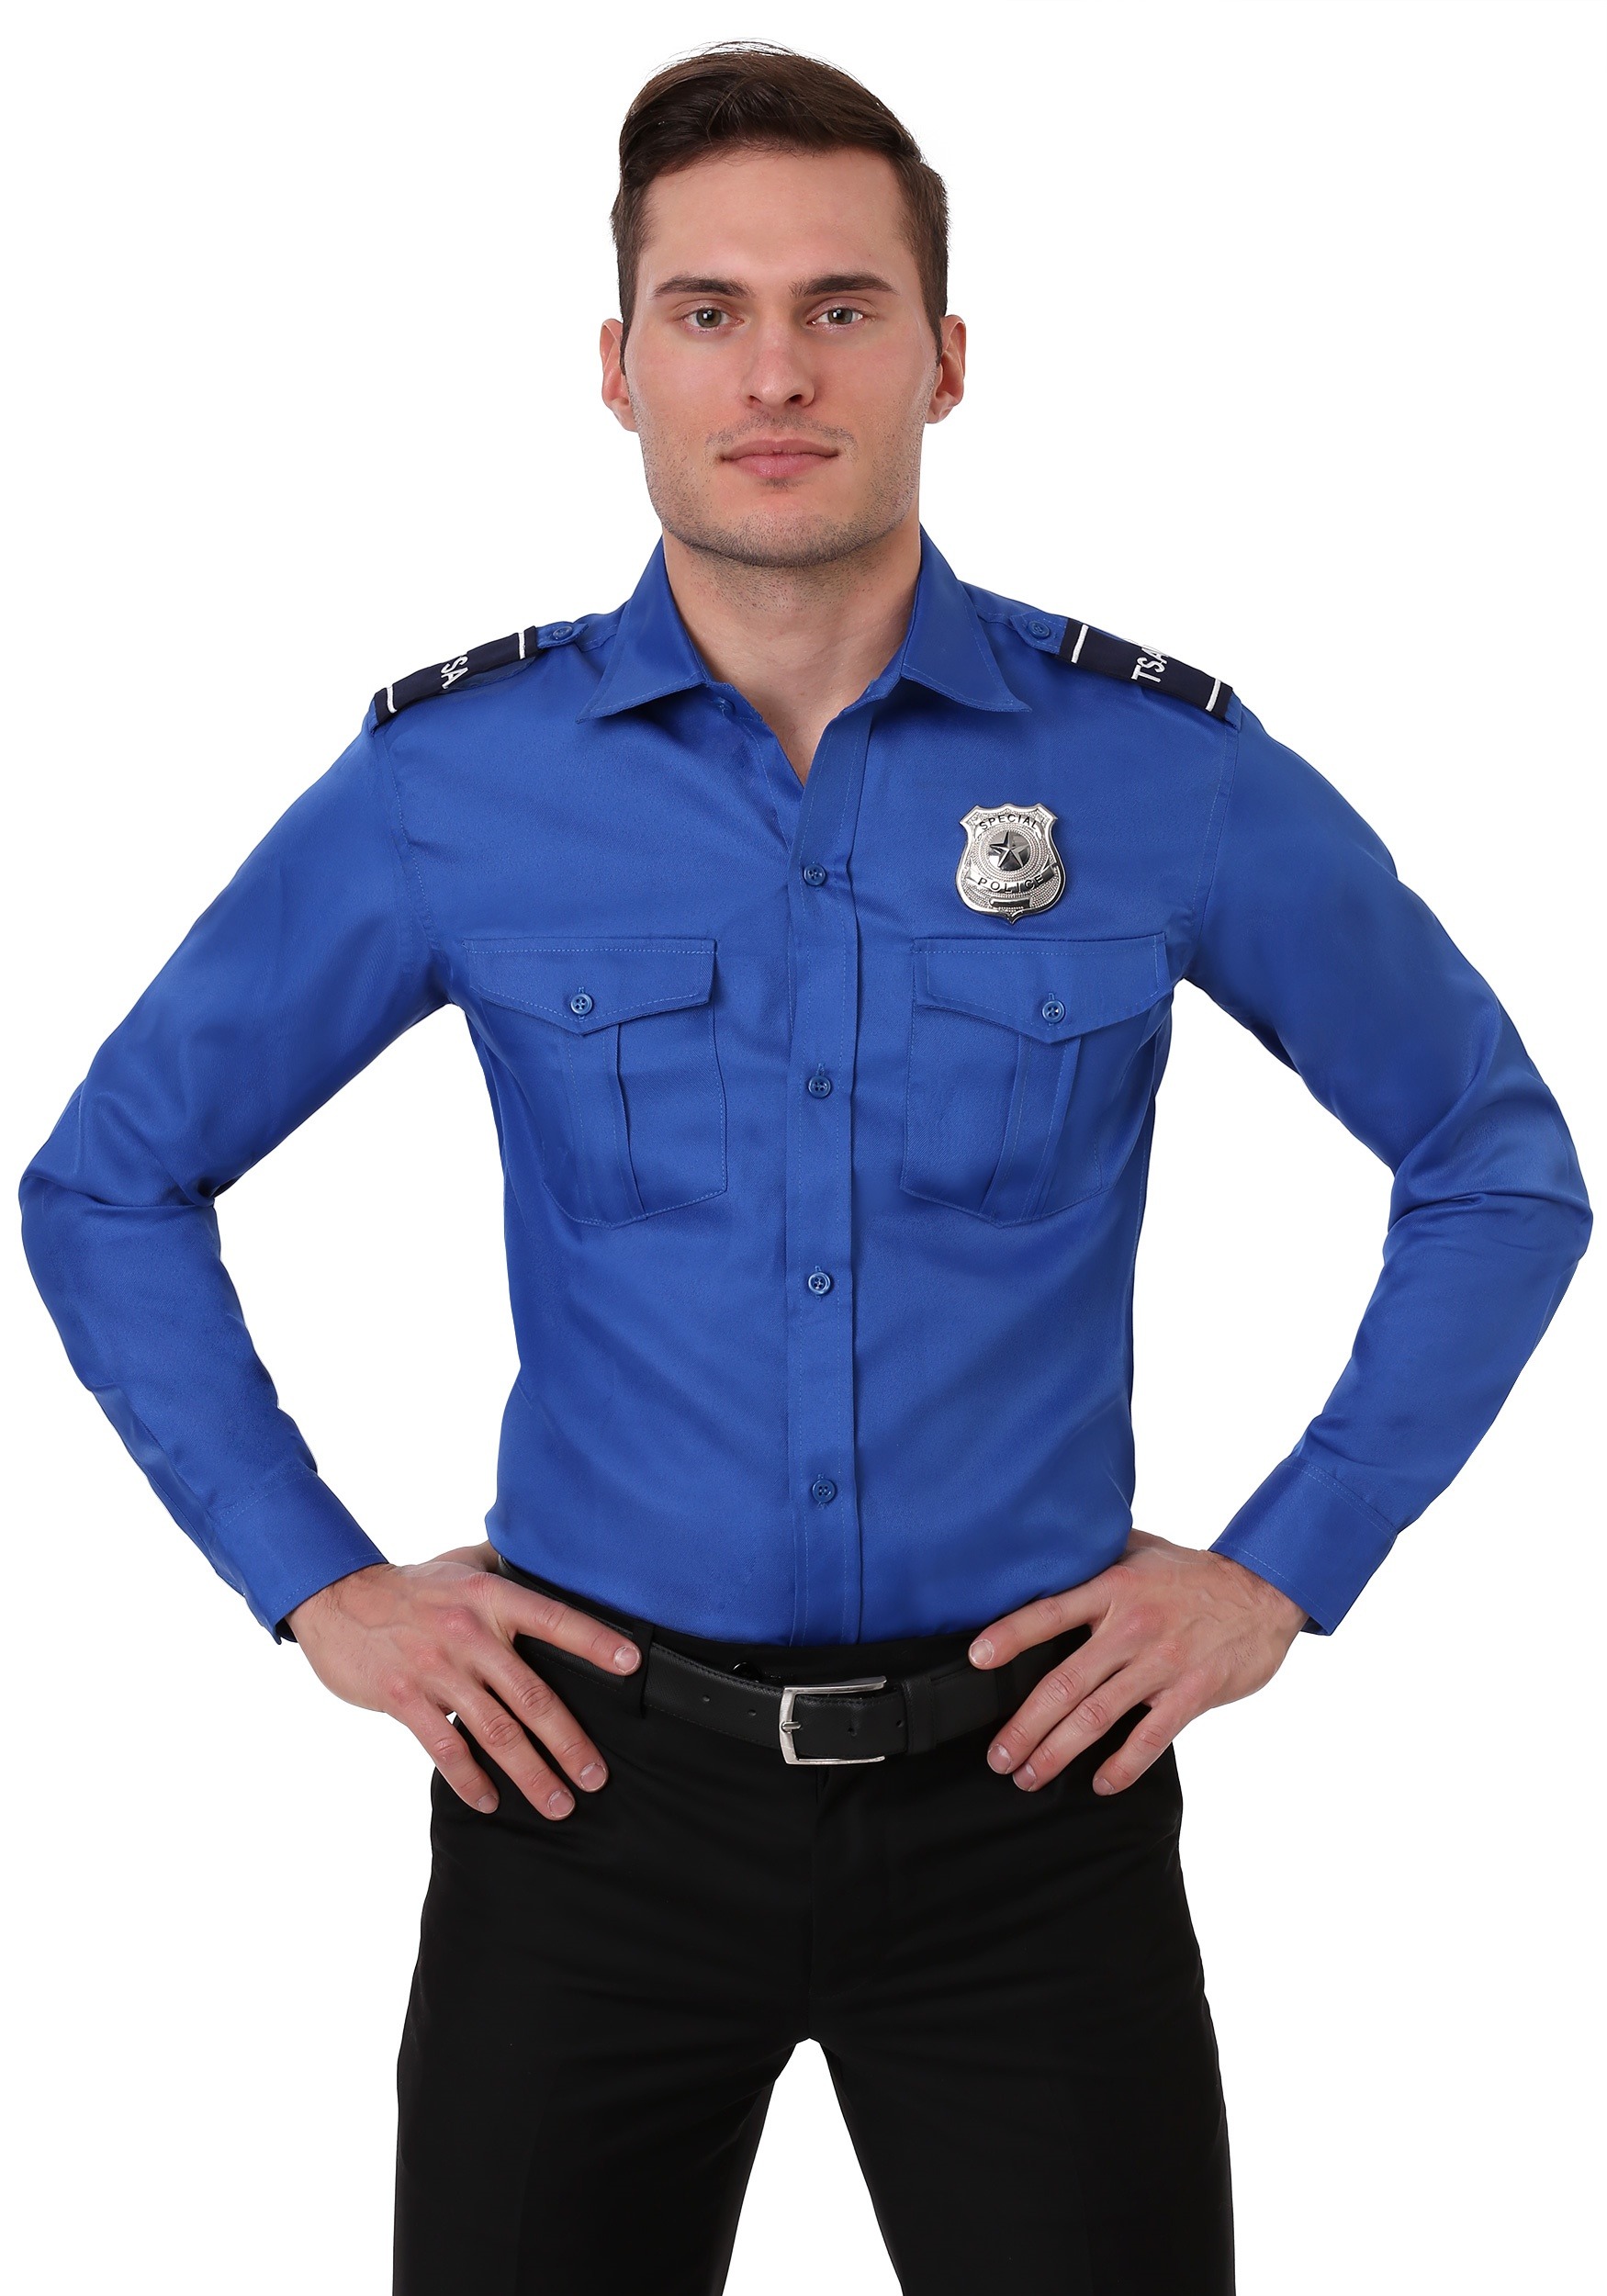 TSA Agent Adult Costume Shirt